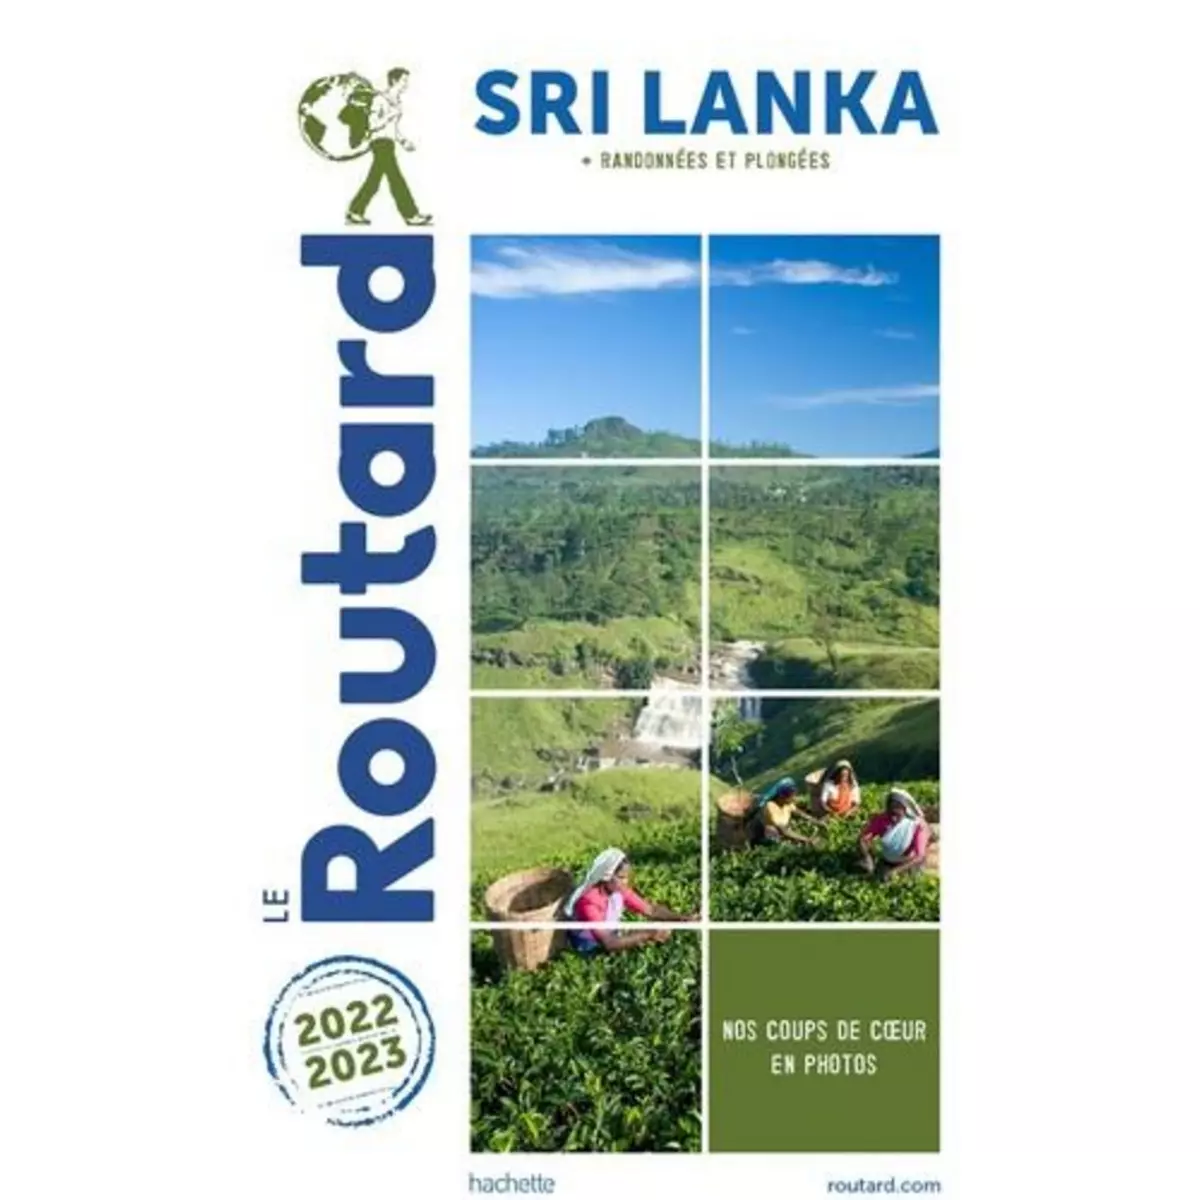  SRI LANKA + RANDONNEES ET PLONGEES. EDITION 2022-2023, Le Routard